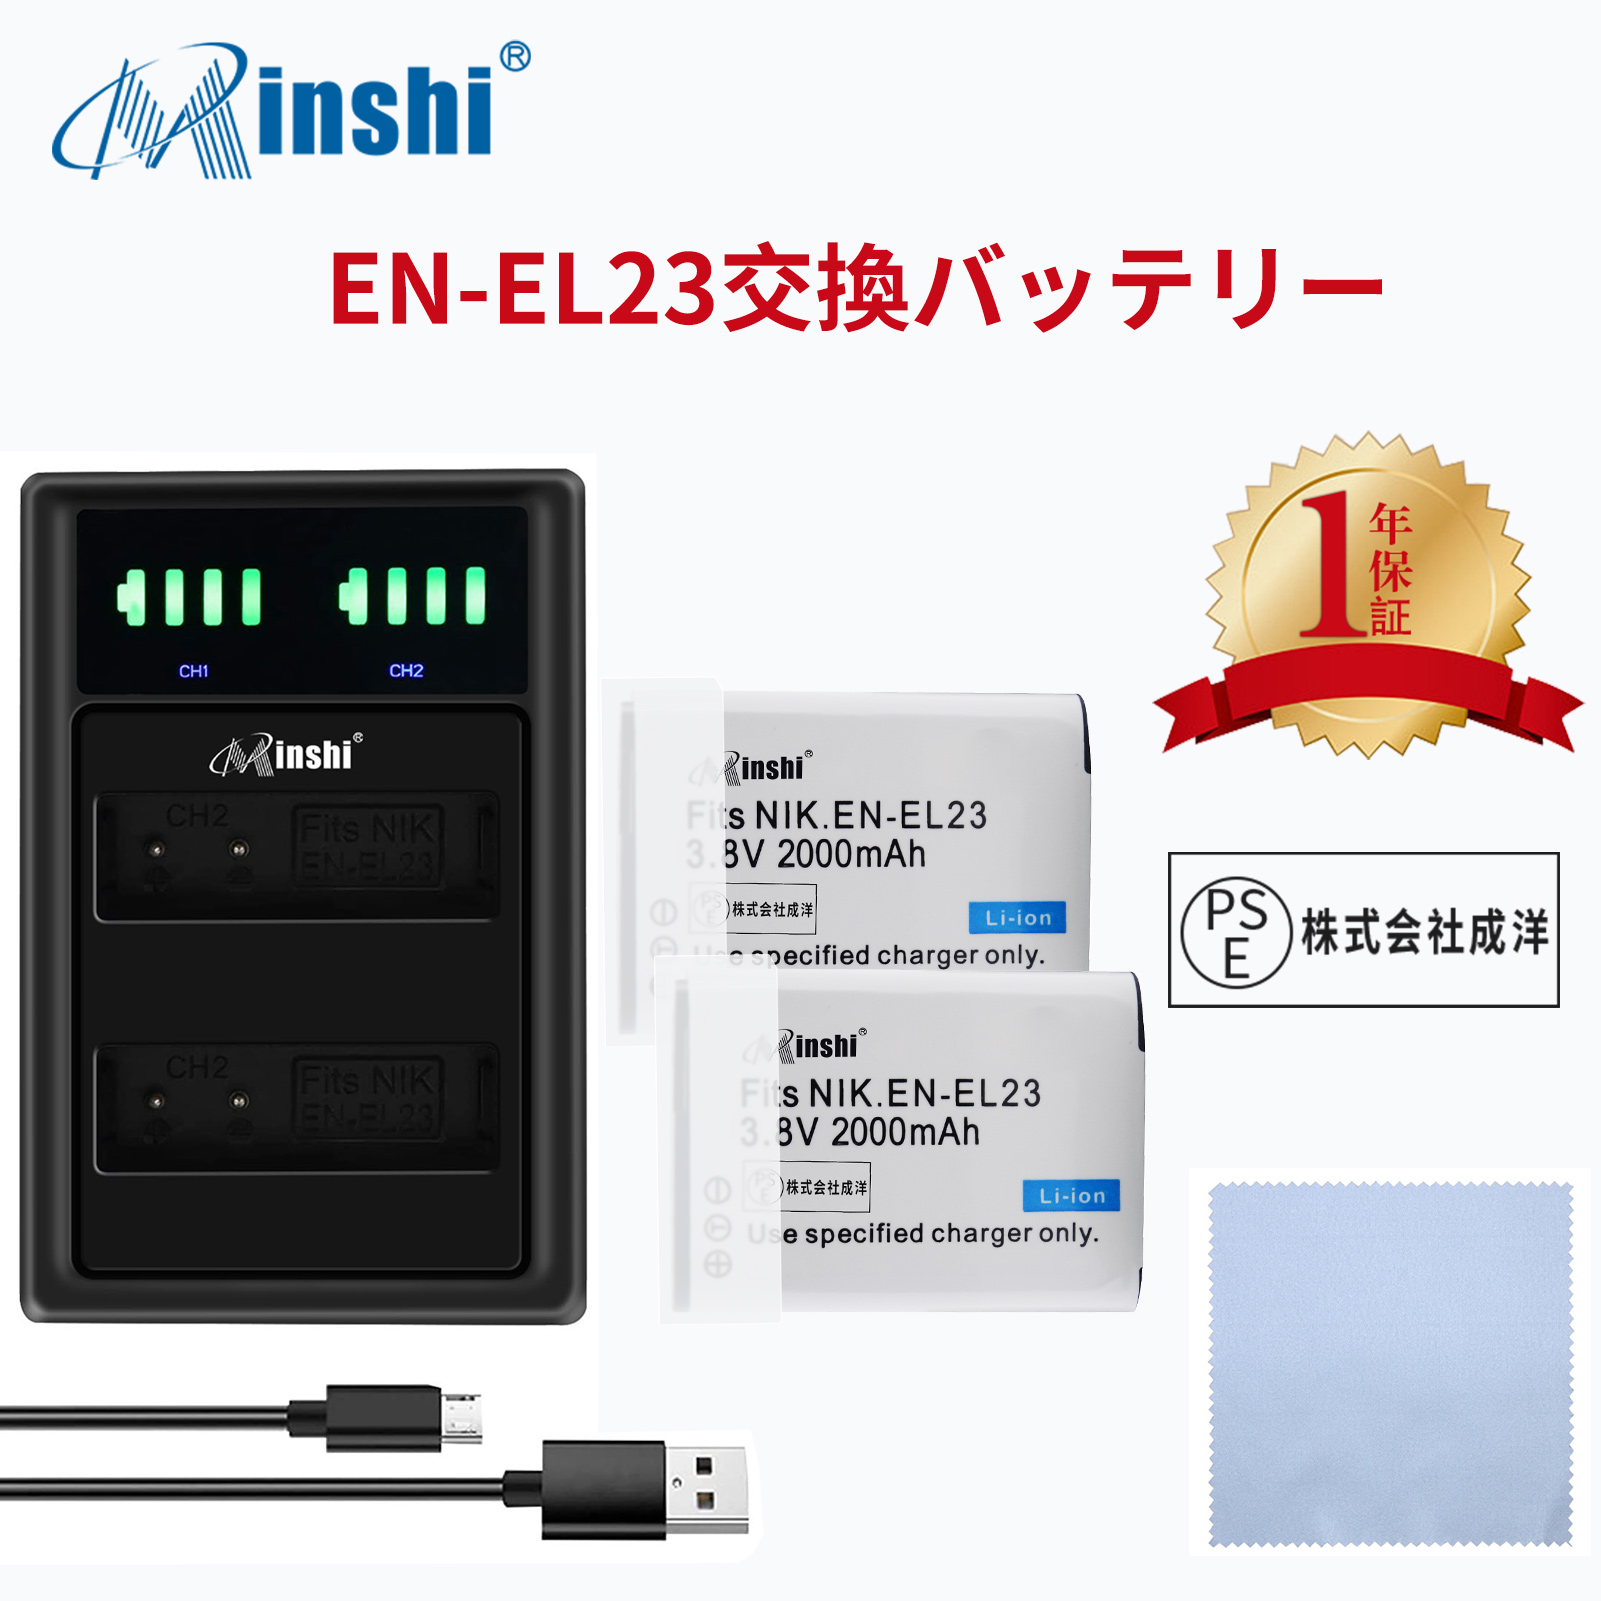 【セット】 minshi NIKON  1F6 EN-EL23 対応 EN-EL23 互換バッテリー 2000mAh PSE認定済 高品質交換用バッテリー【2個】